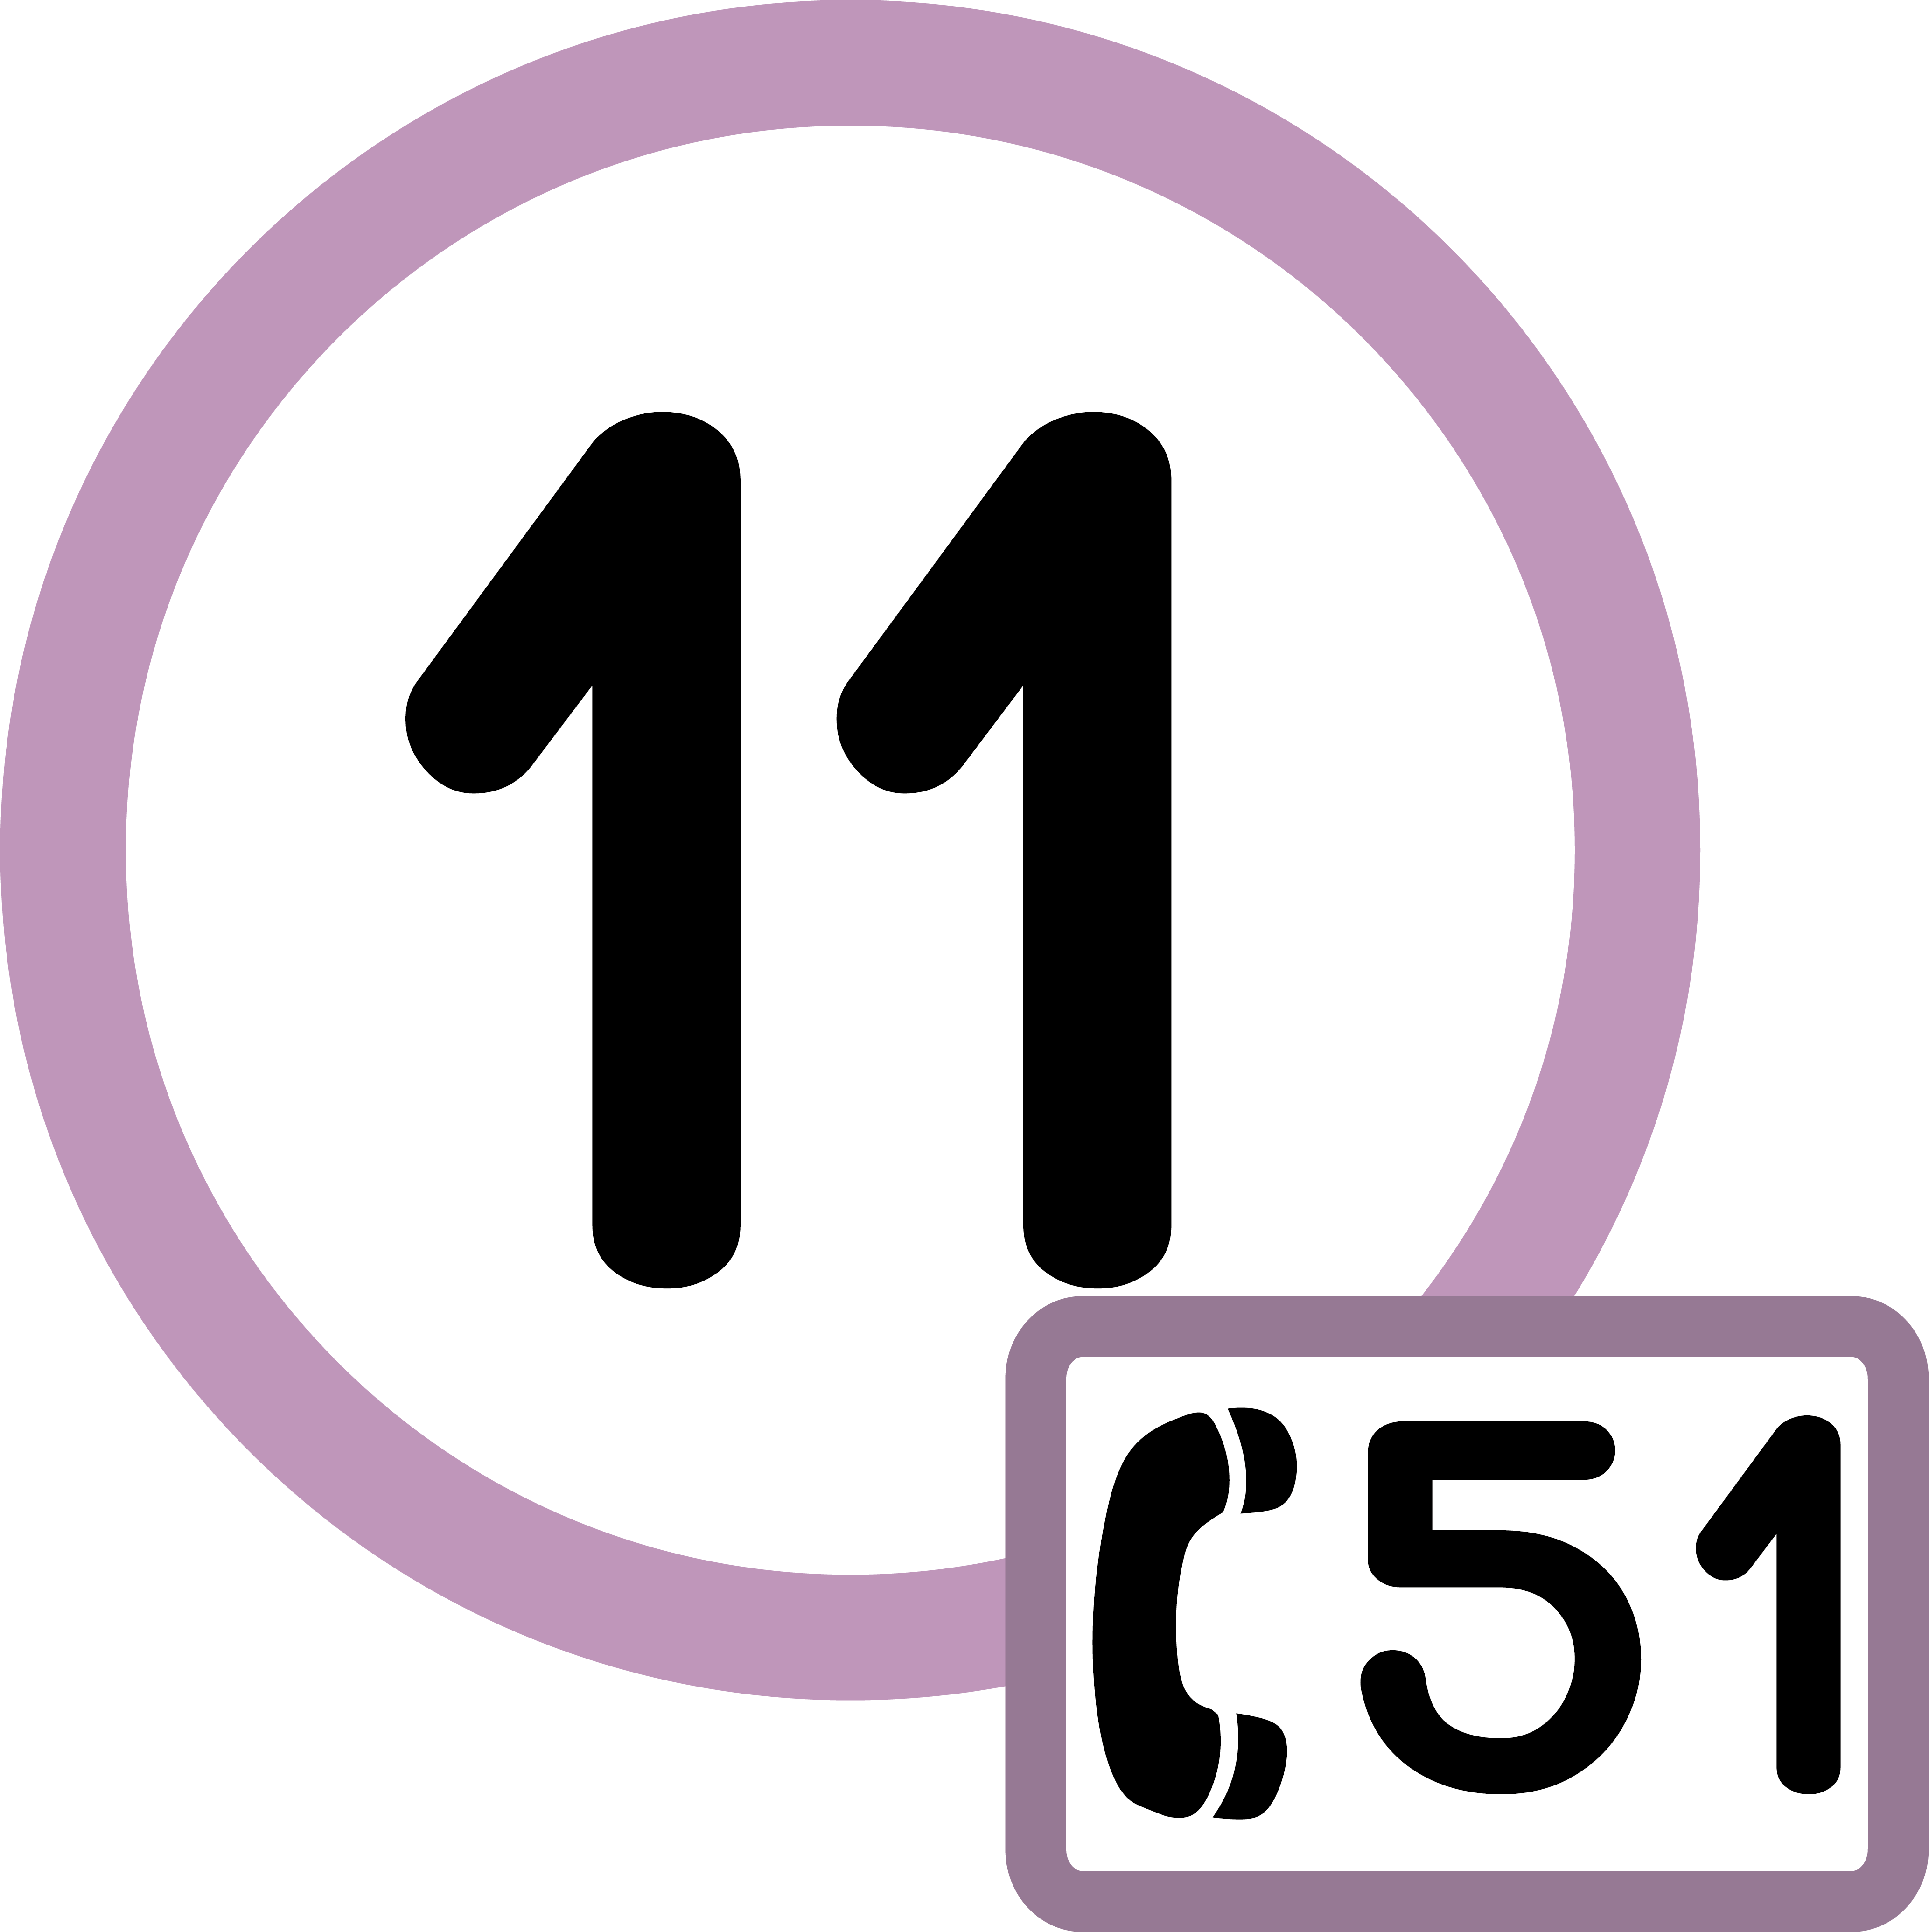 Pictogramme de la ligne 11 et du transport à la demande 51